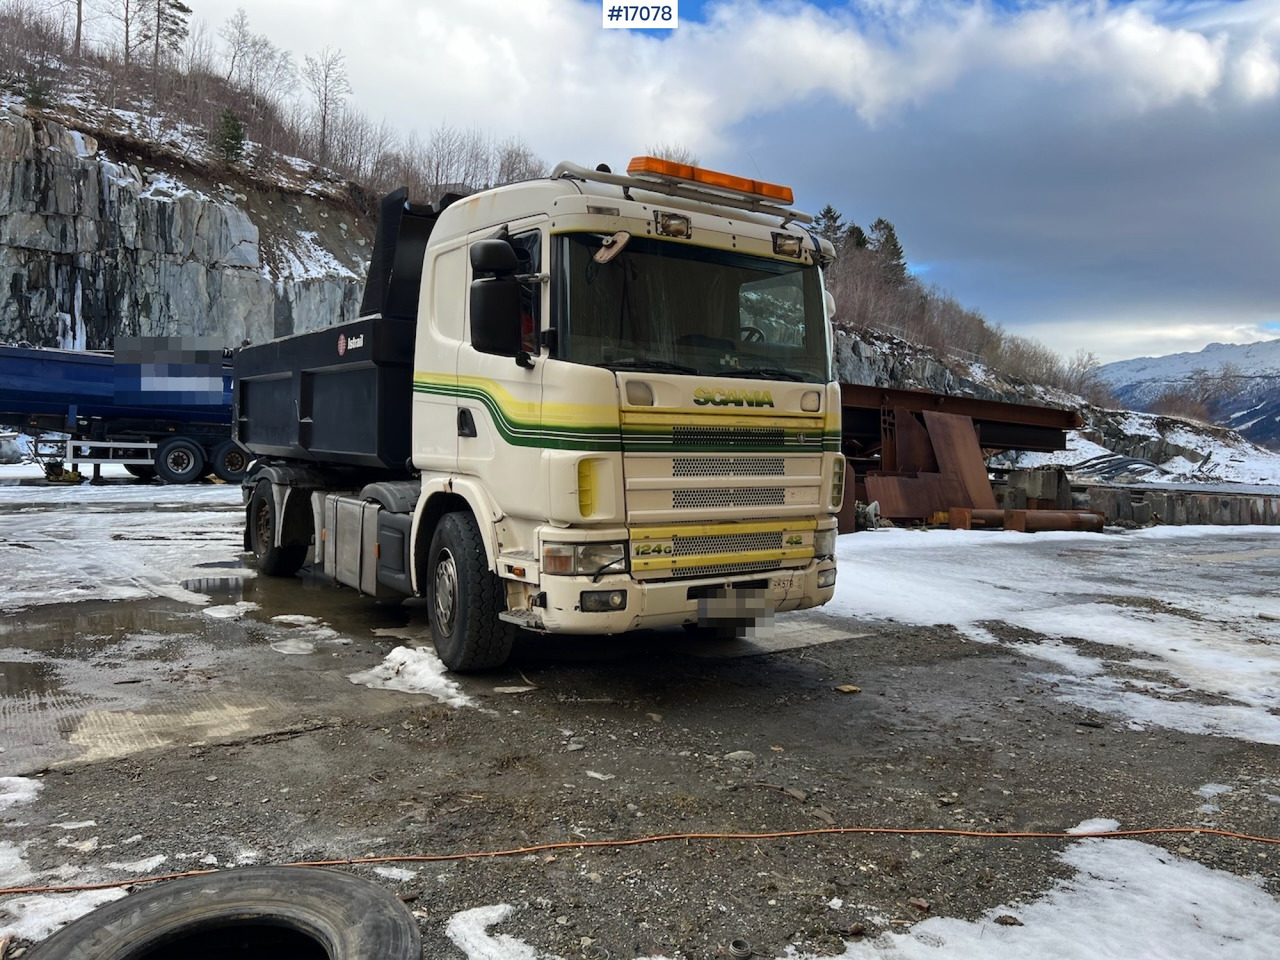 Istovarivač Scania R124: slika 28